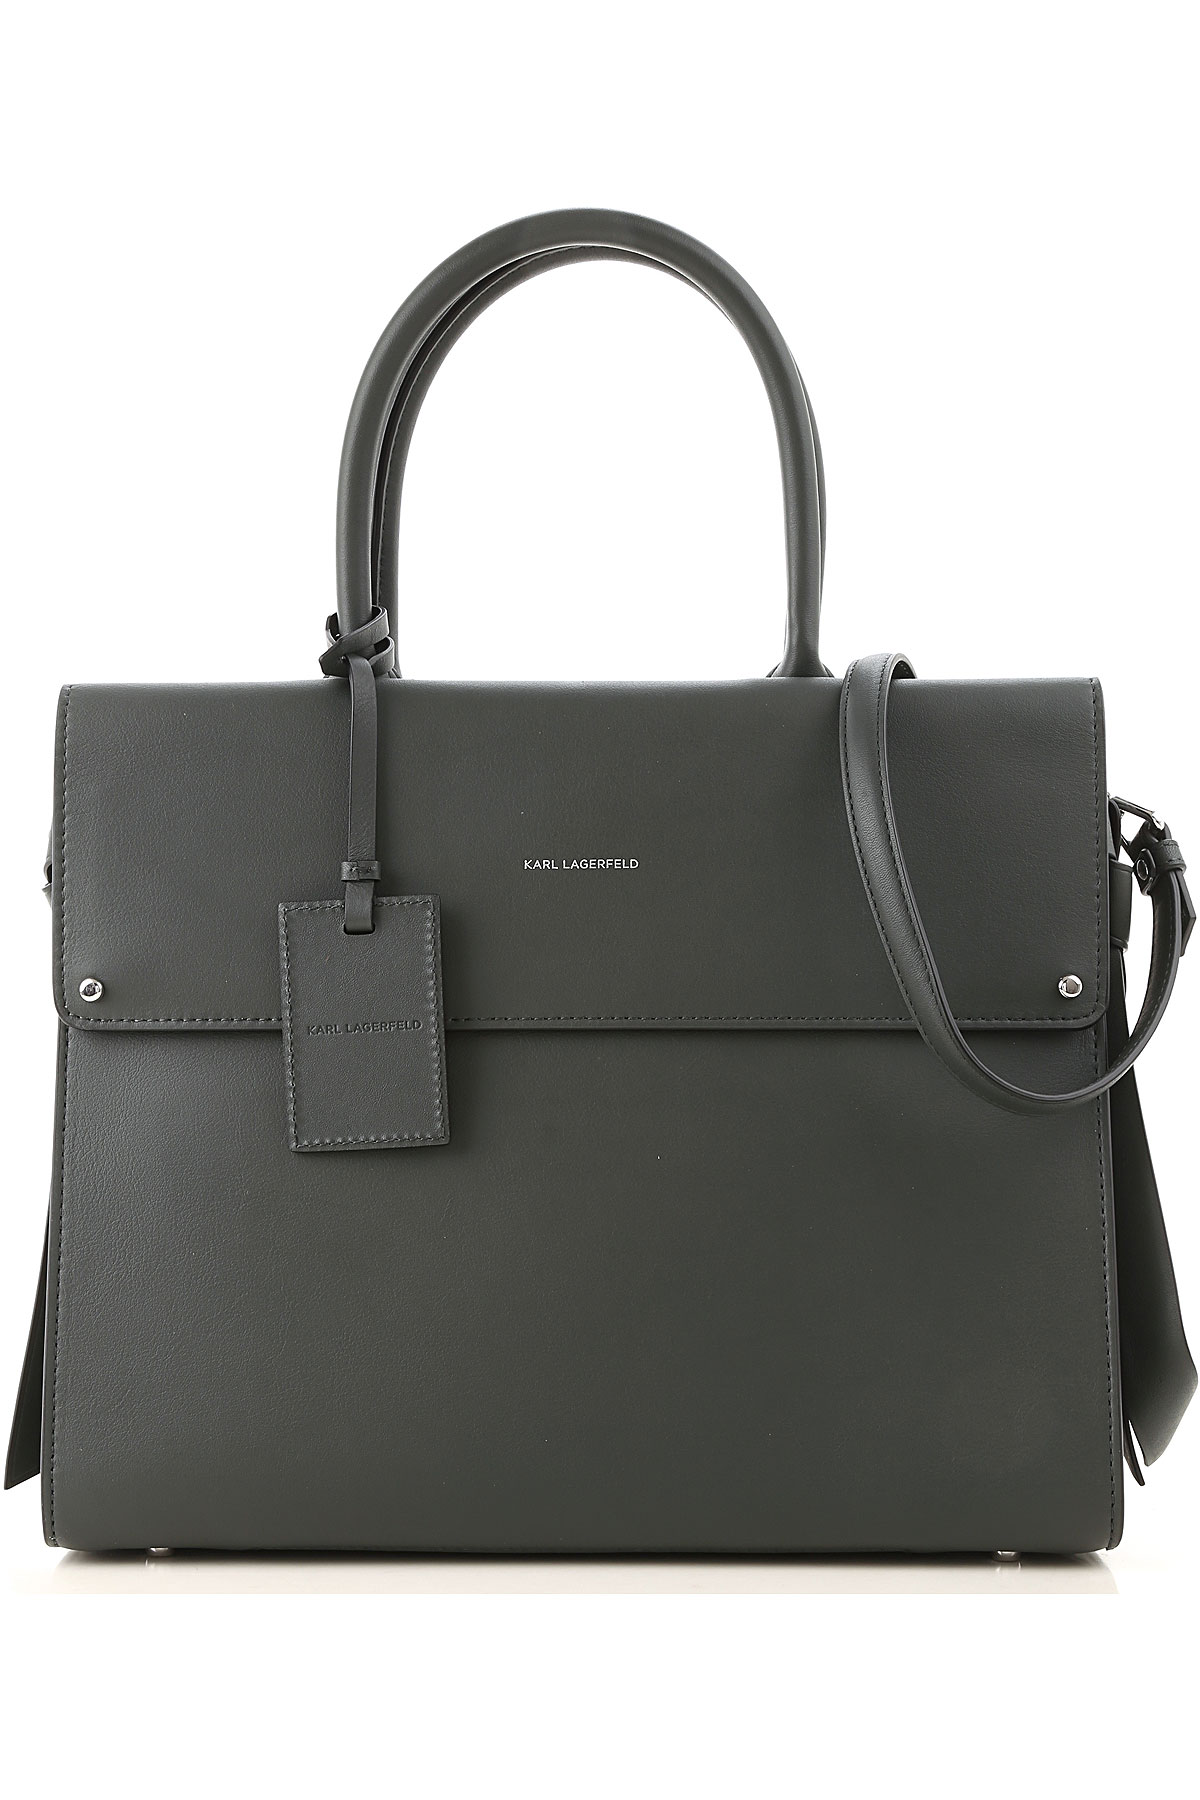 Handbags Karl Lagerfeld, Style code: 96kw3248-pine-